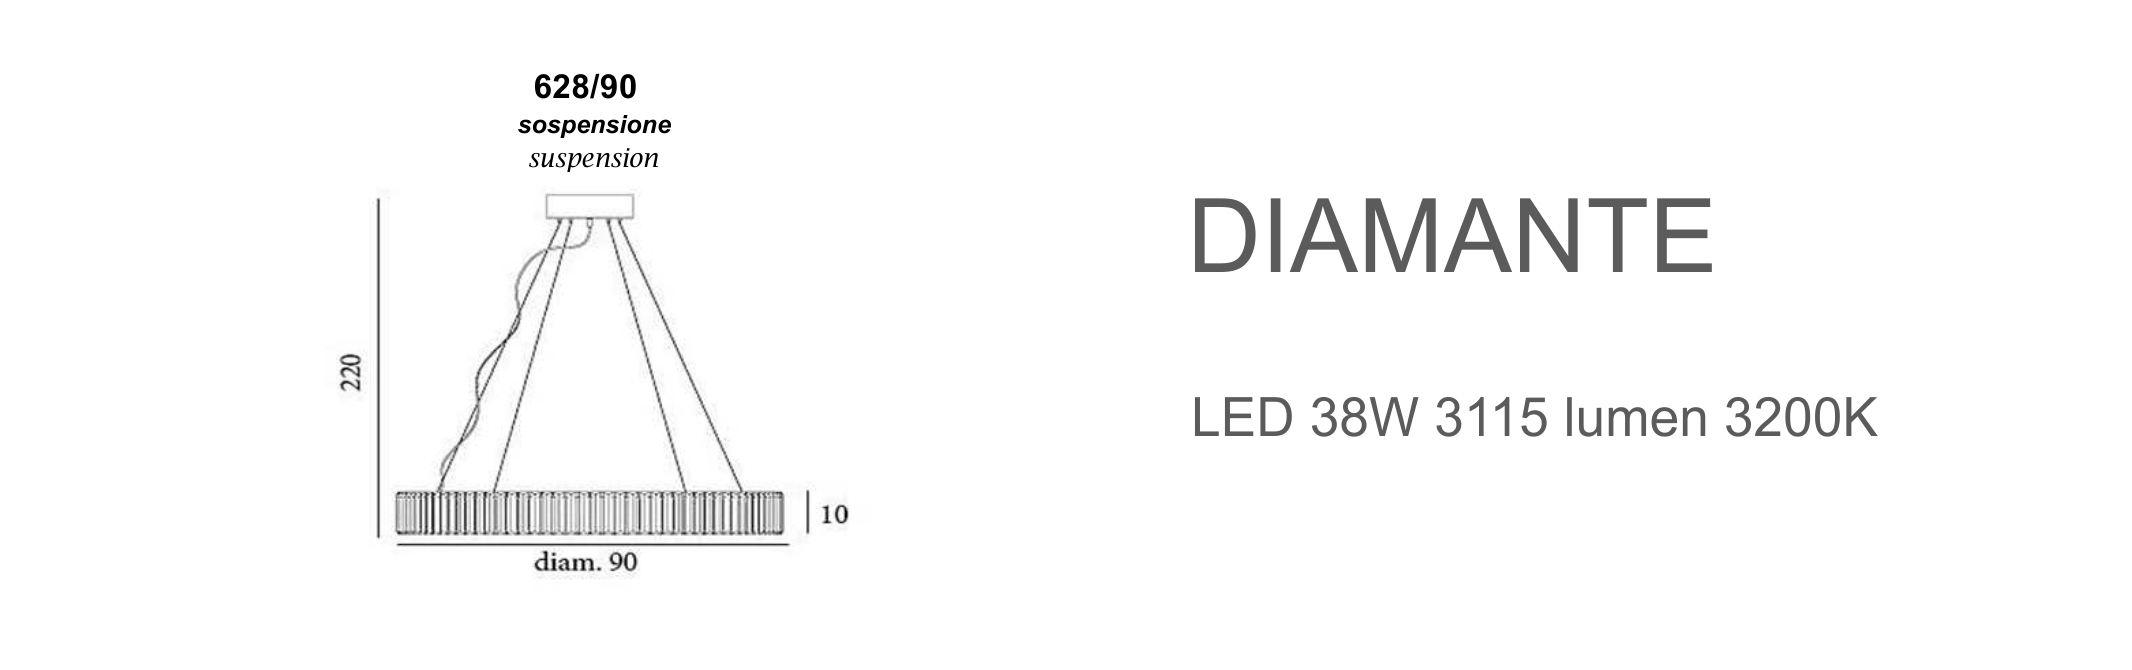 Diamante 628/90